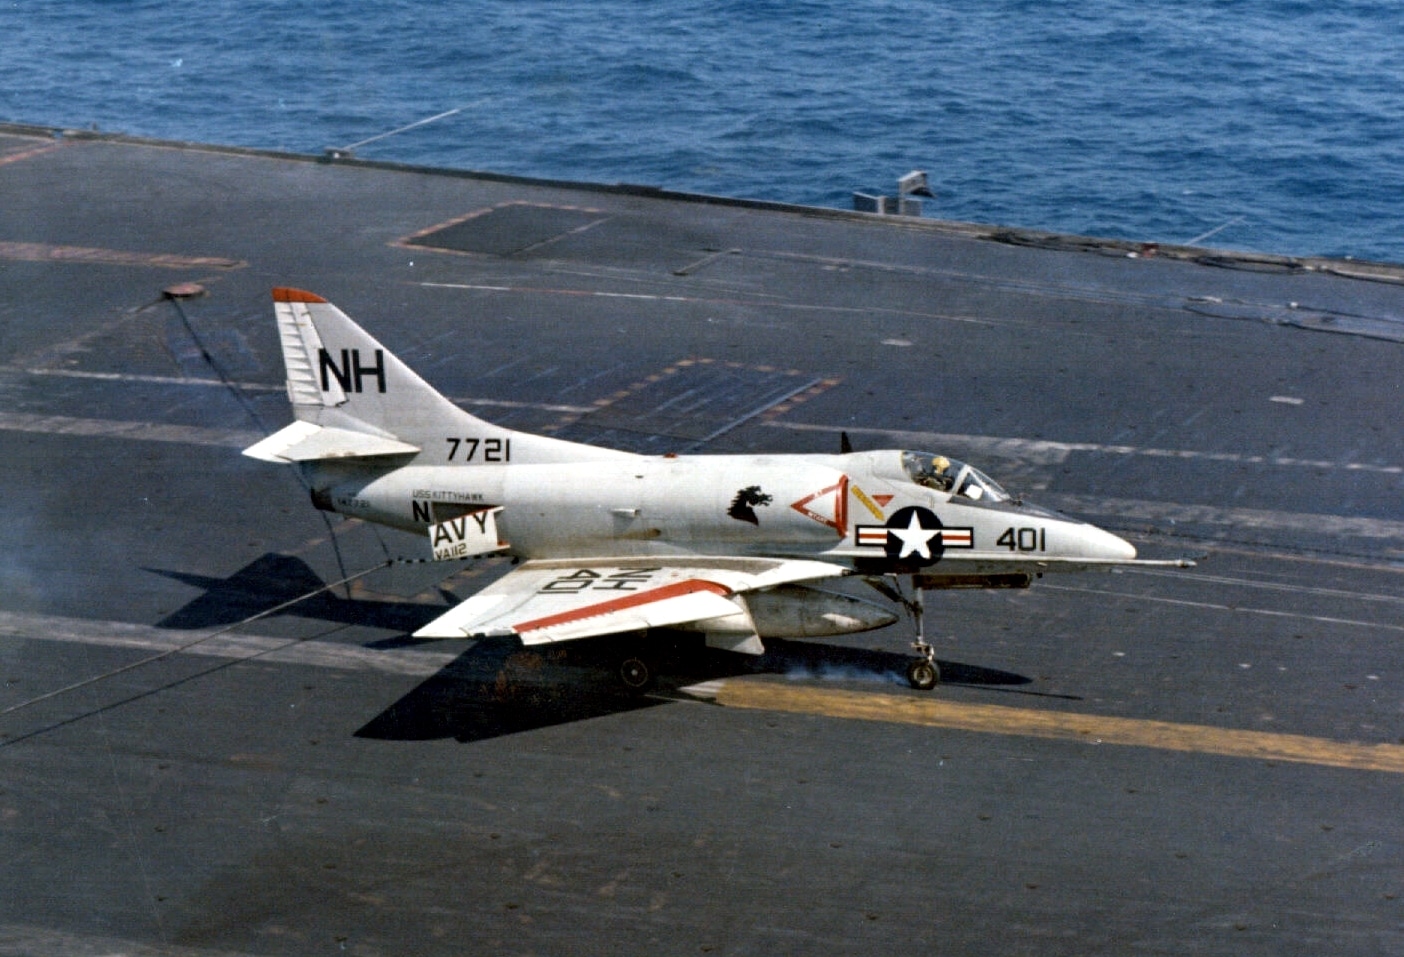 Skyhawk landing on carrier.